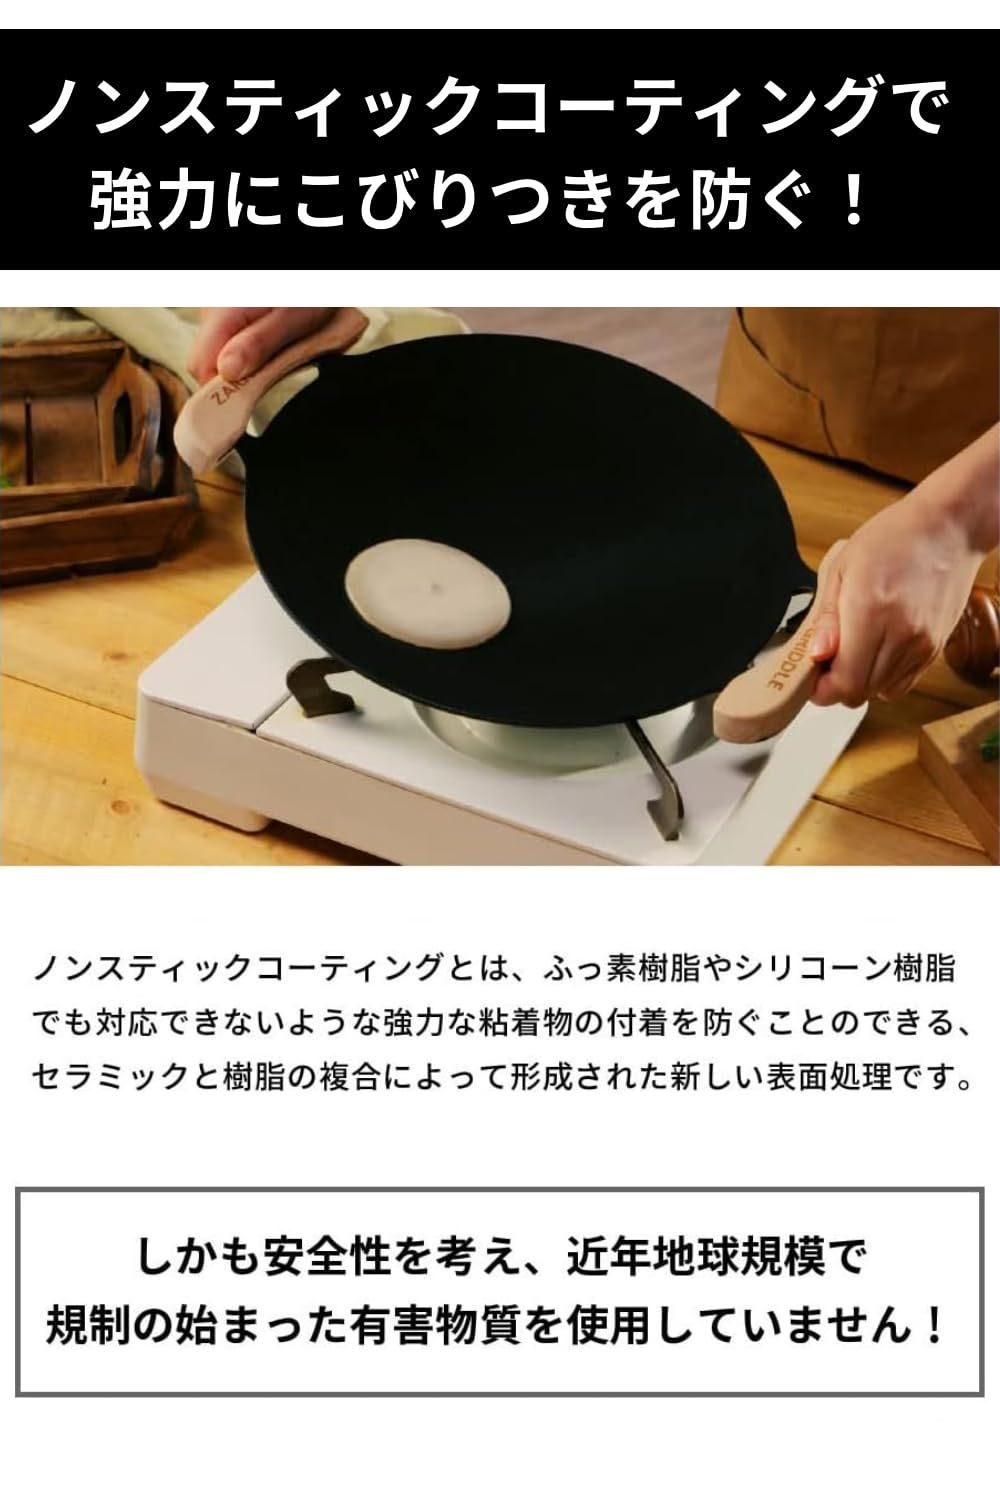 正規品】ザイグルグリドル二枚プレートセット 調理用鉄板 - メルカリ